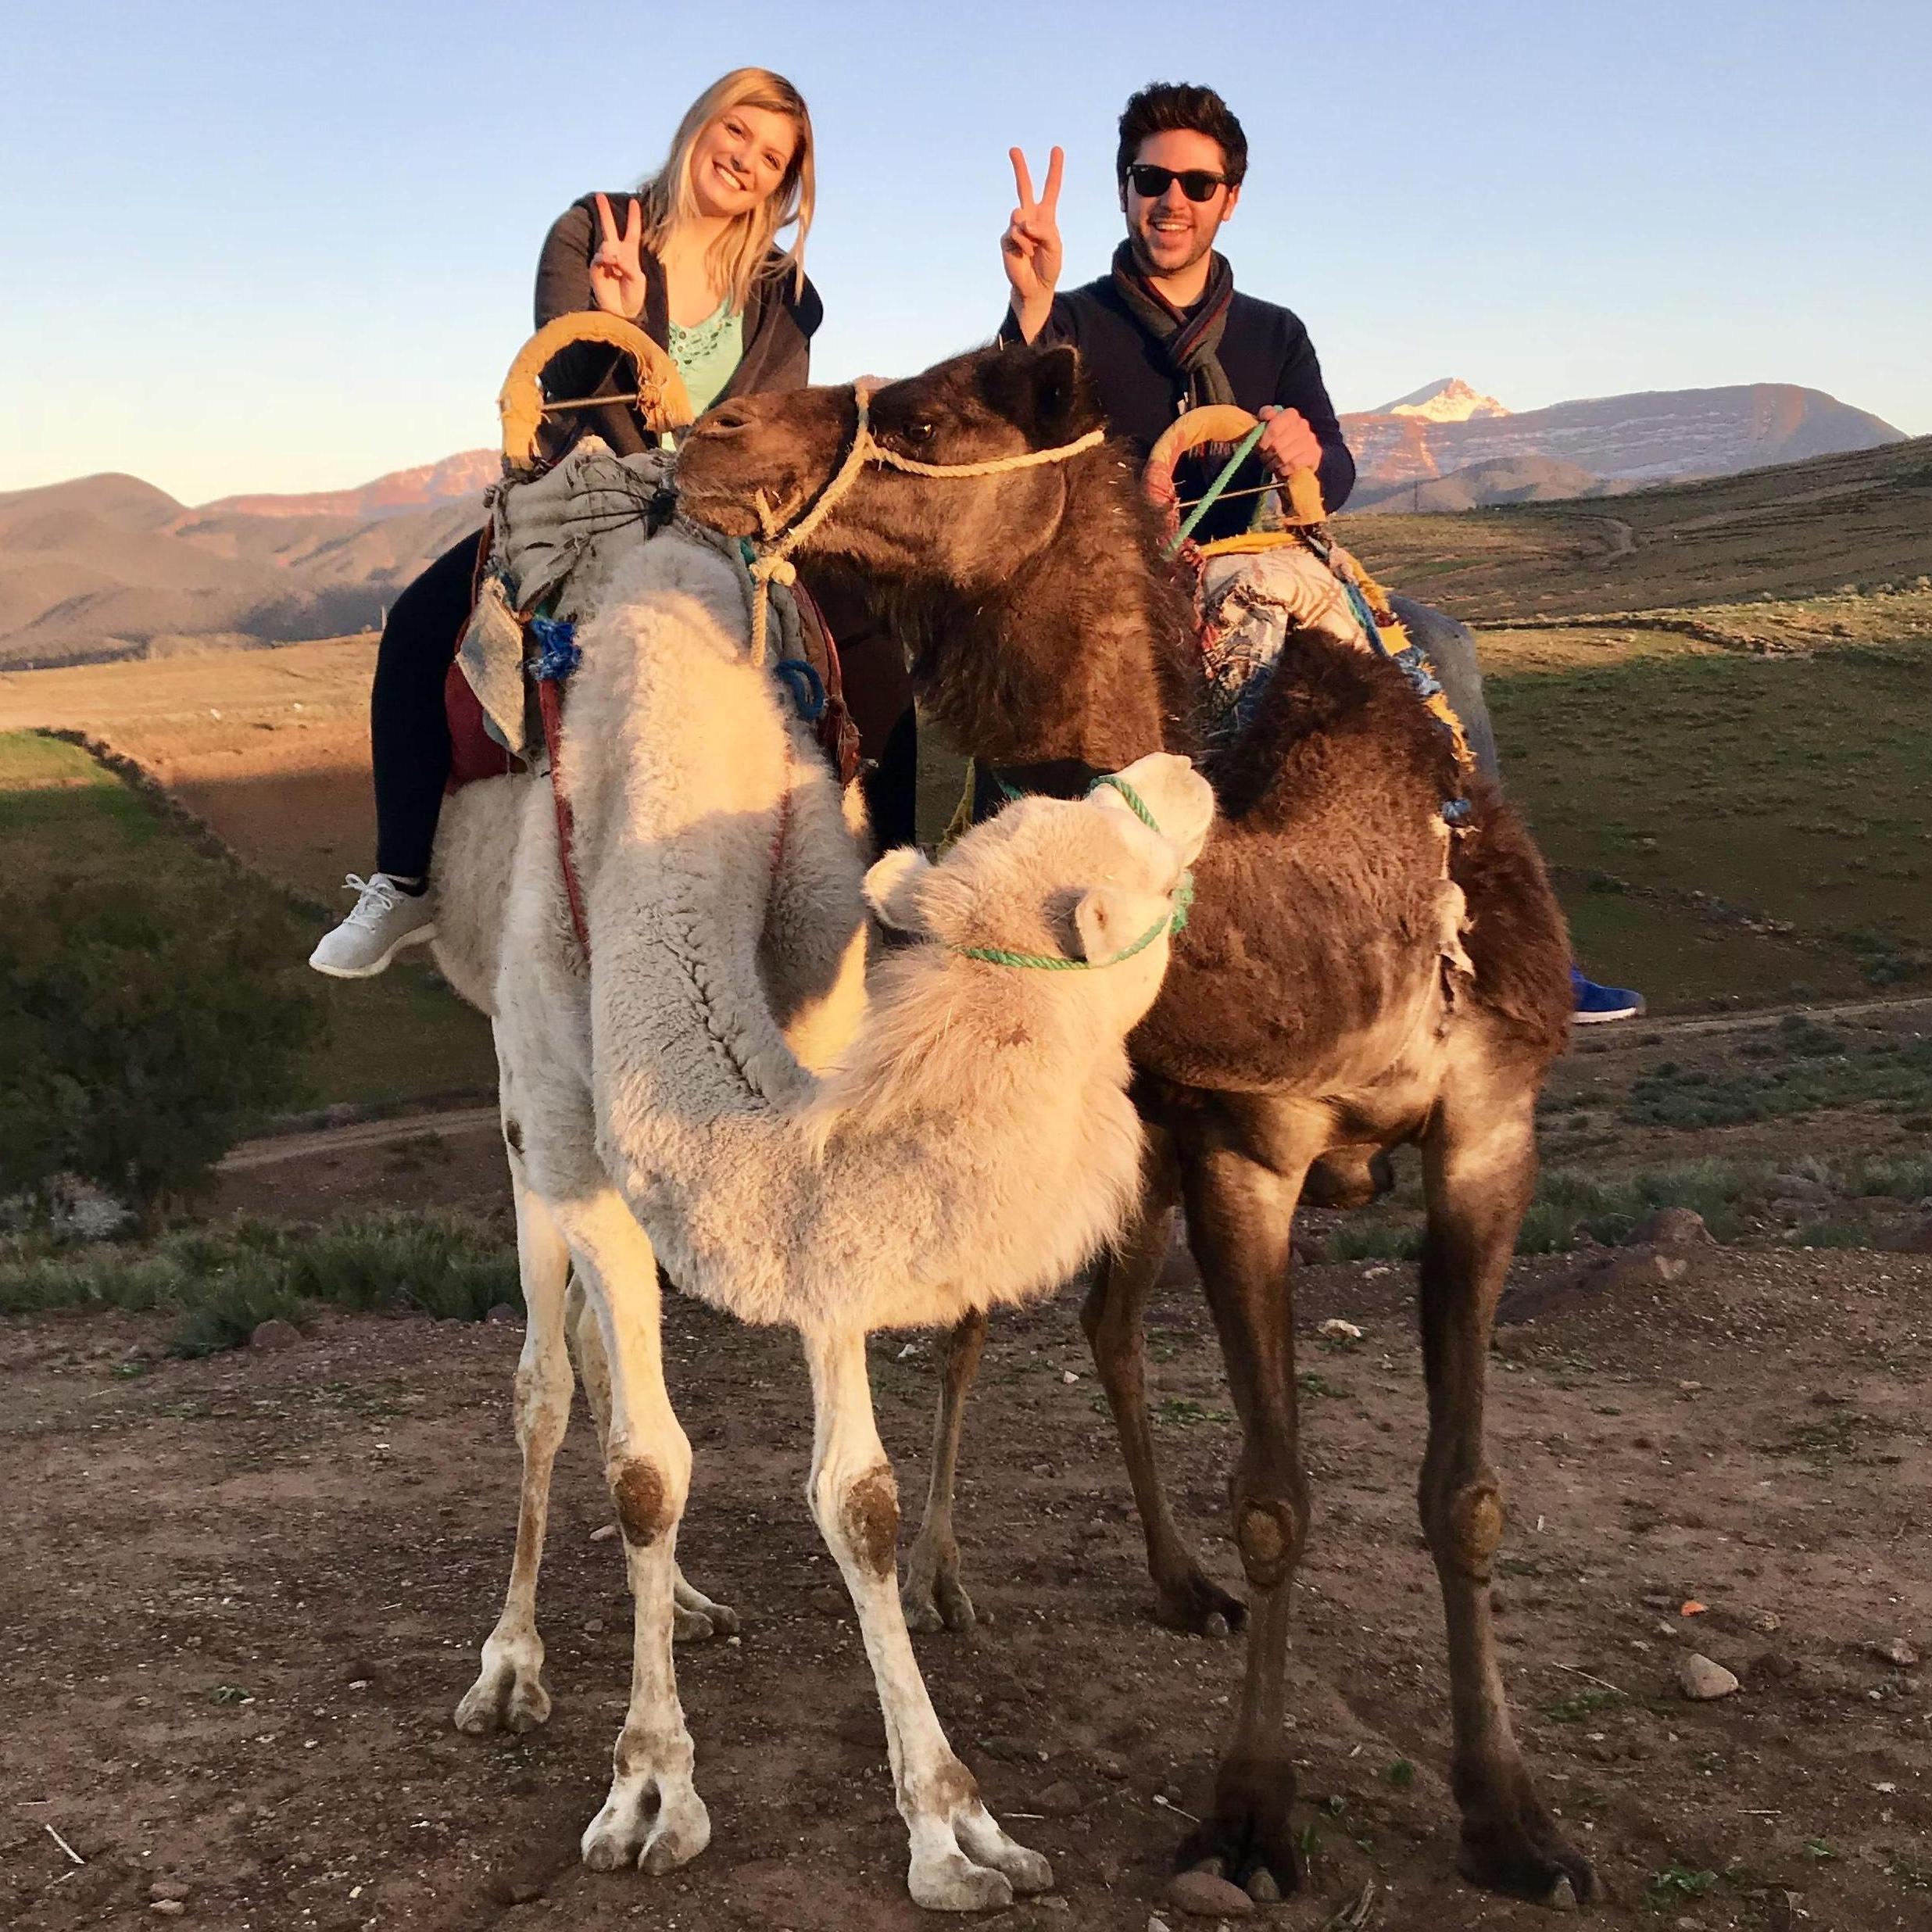 Camel ride outside Marrakesh, Morocco
2018